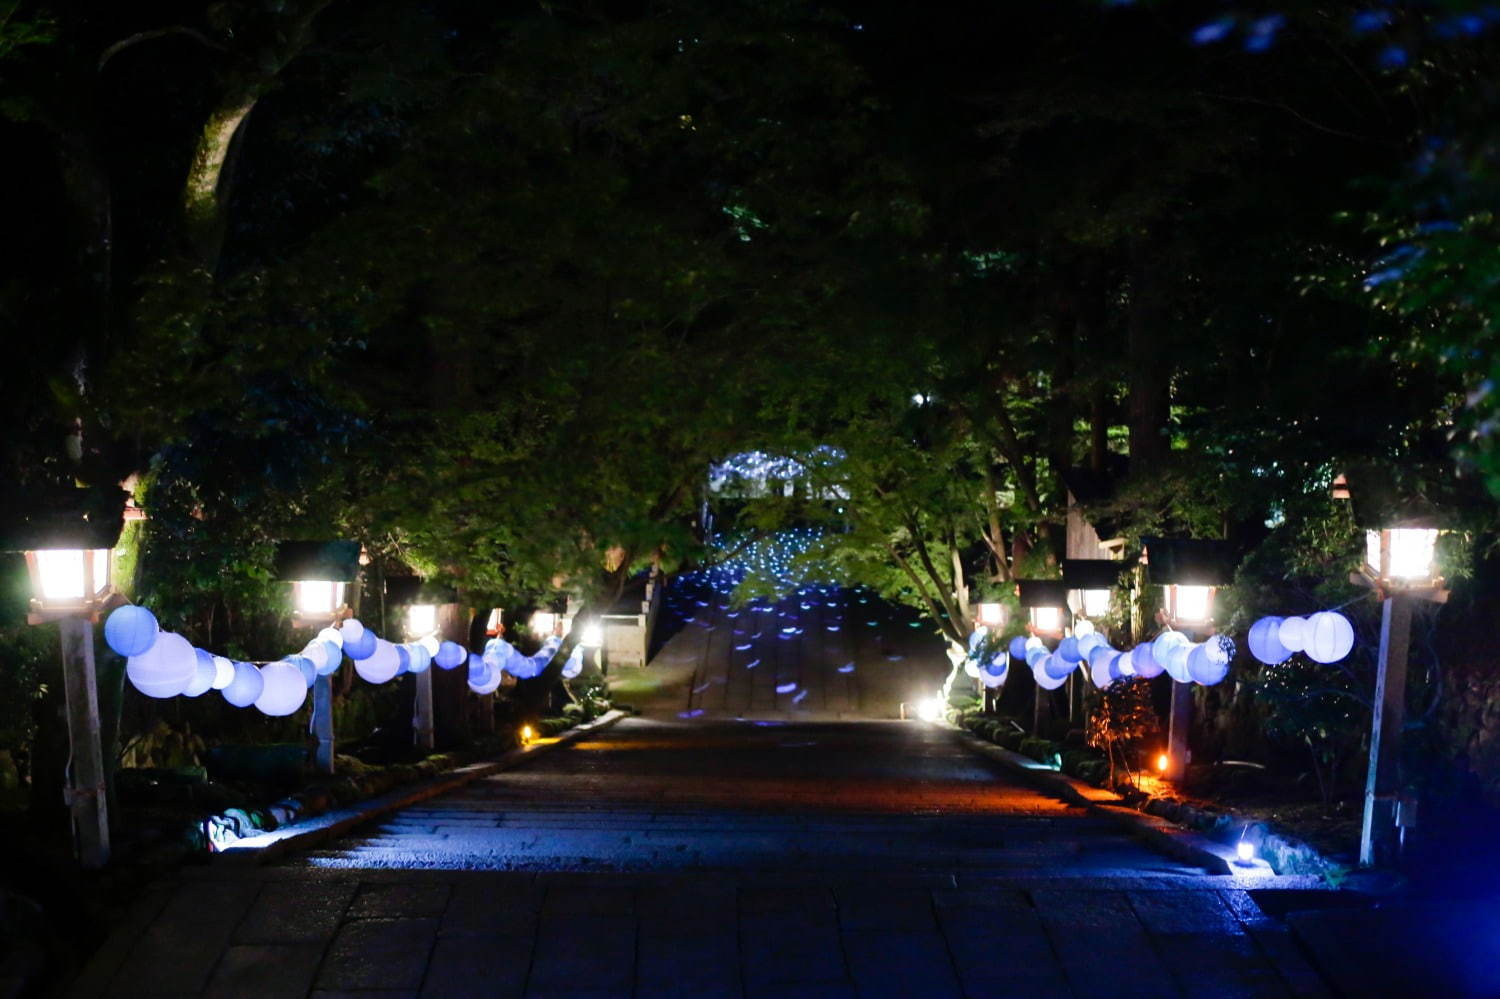 宙フェス 19 京都嵐山 法輪寺で 月をスマホで撮影できる天体観測会など 宇宙の不思議 を体験 ファッションプレス